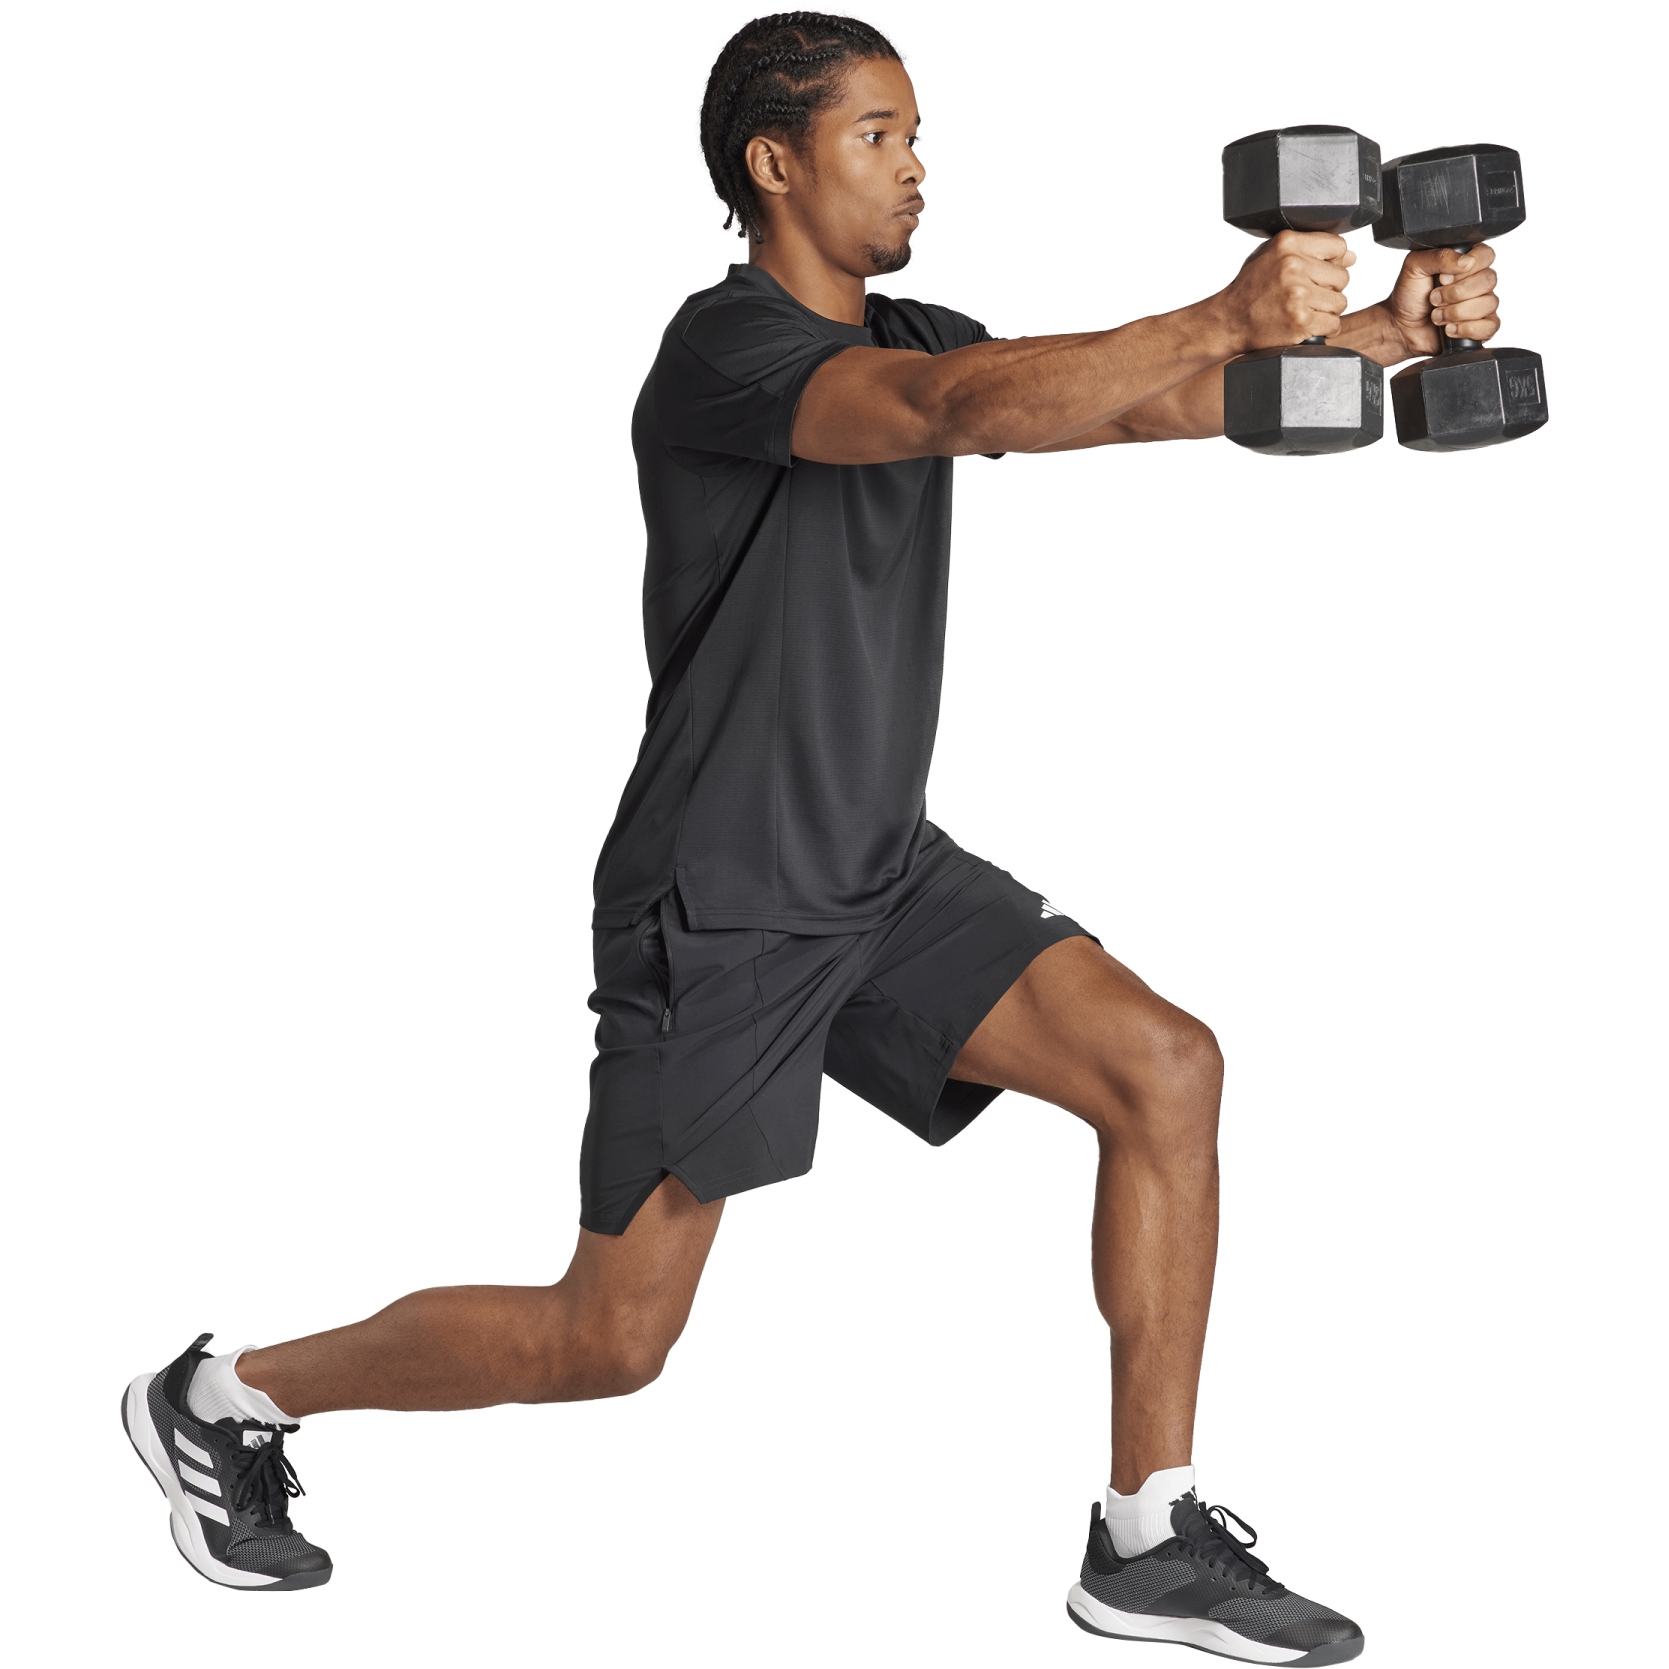 adidas Designed for Training Workout Shorts - Black, Men's Training